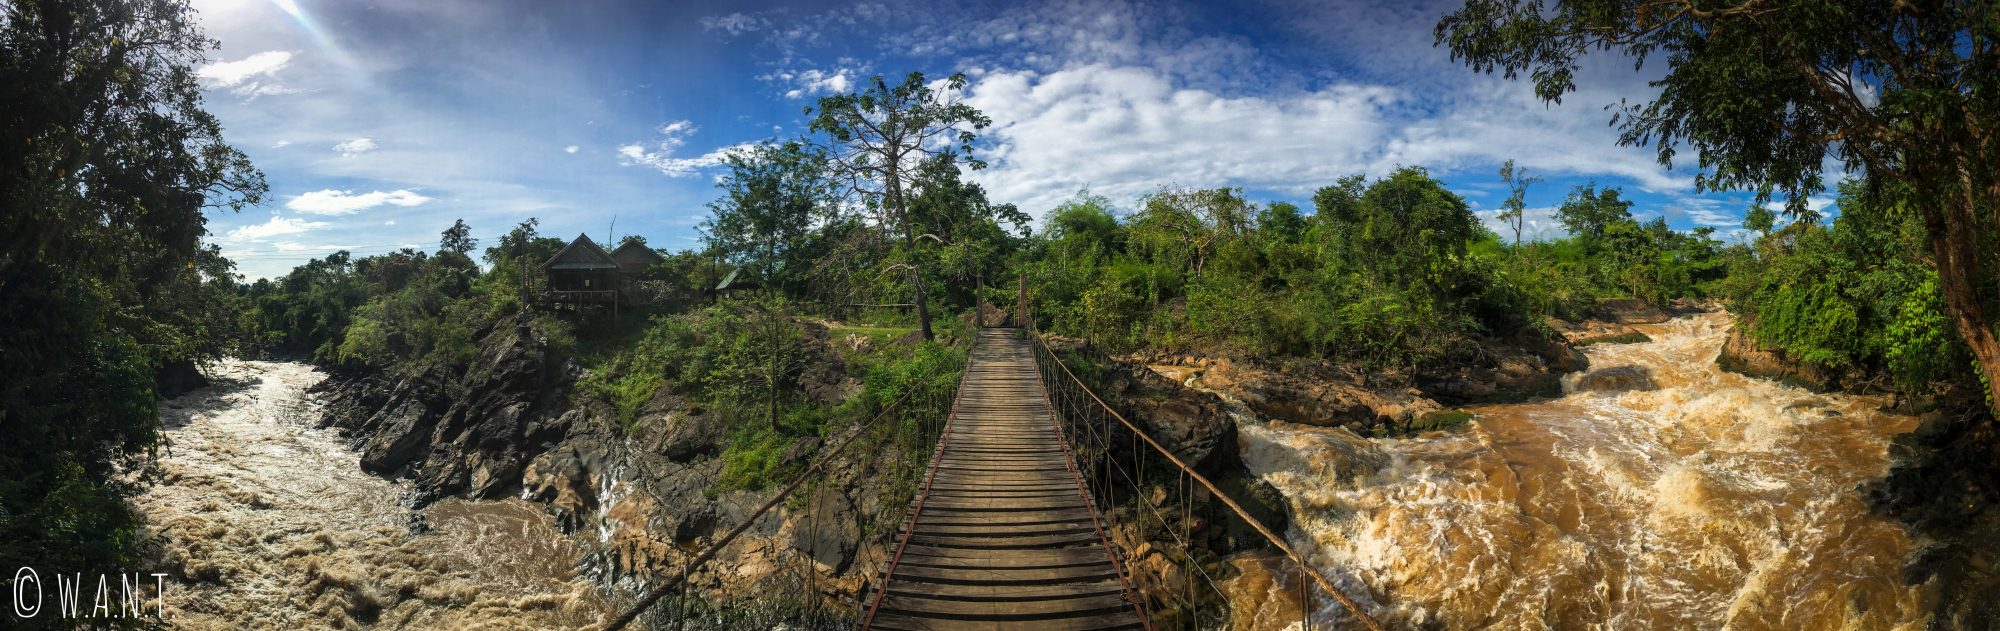 Panorama depuis le pont suspendu de l'île de Don Khon